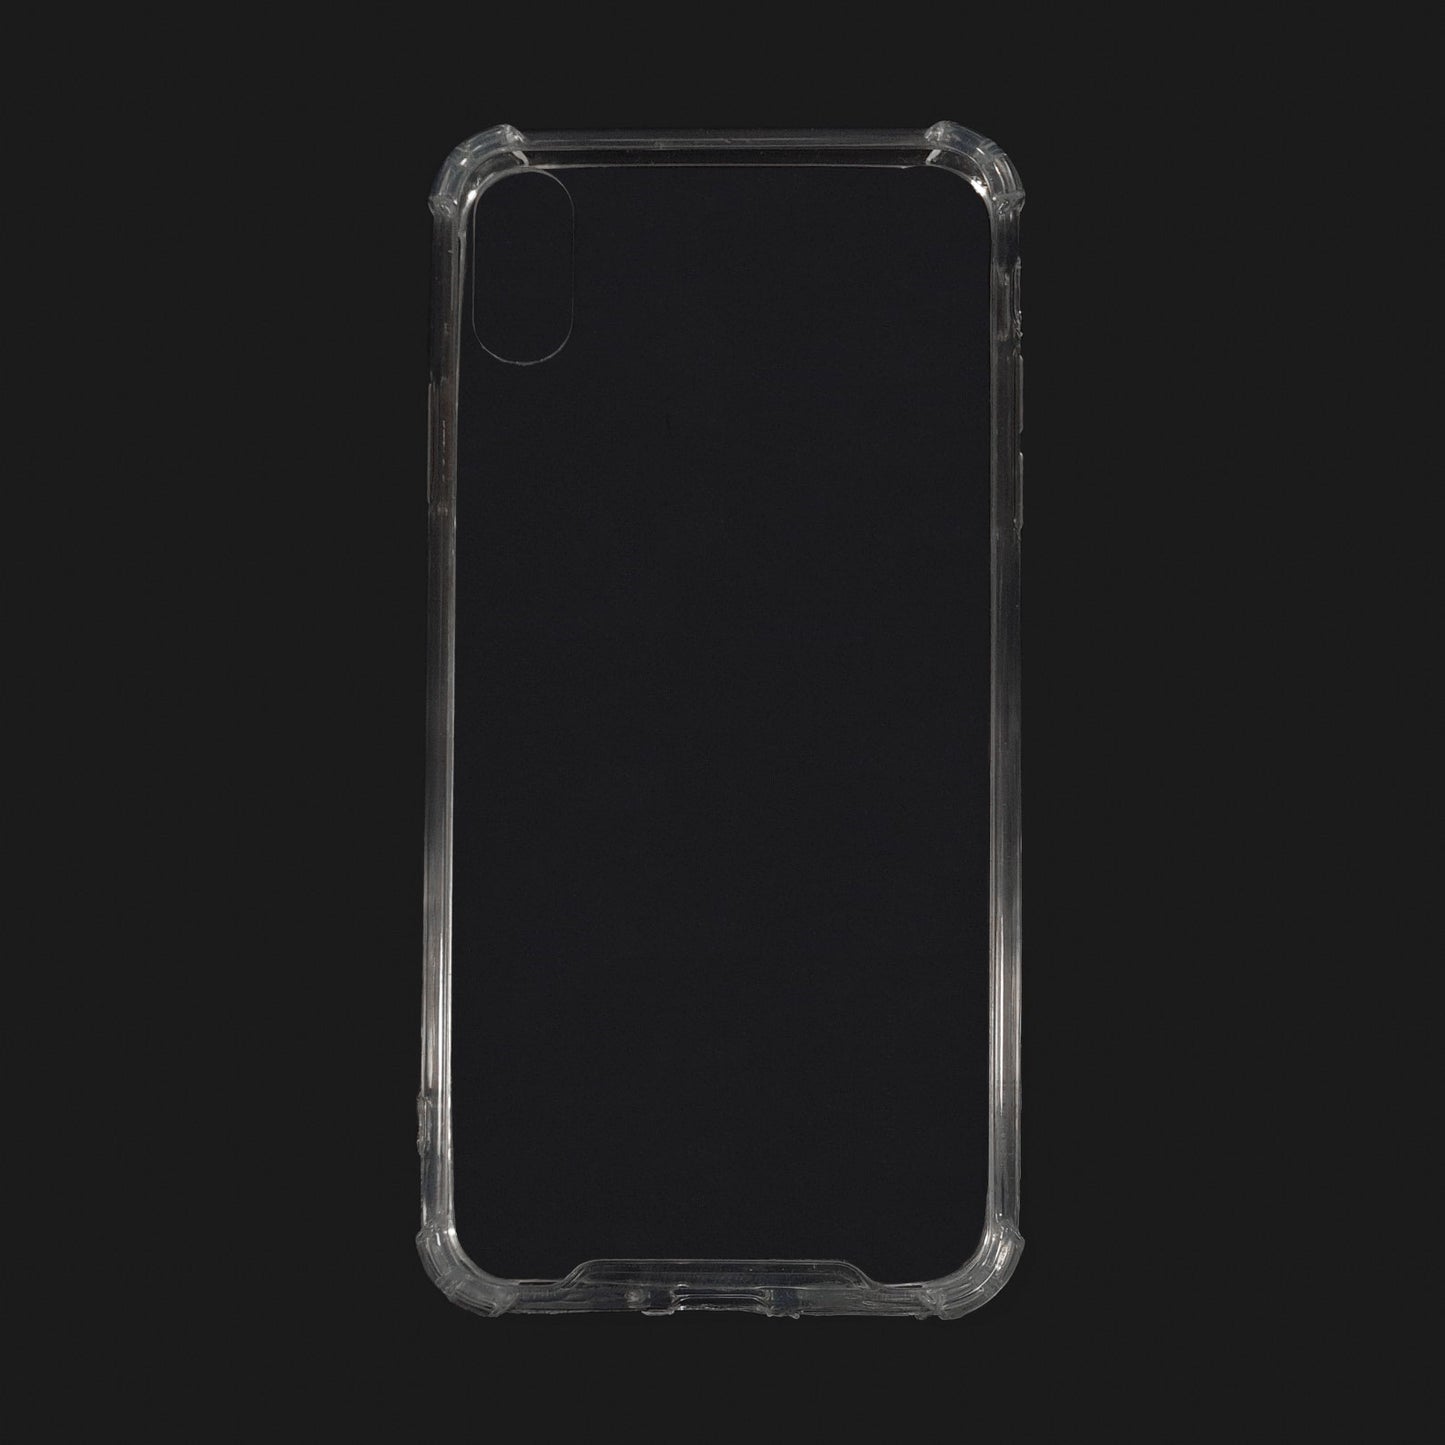 Funda suave transparente para iPhone, Funda de Móvil hecho de Silicona suave, modelo Normal y Anti-golpe, Carcasa de Móvil para iPhone XS Max